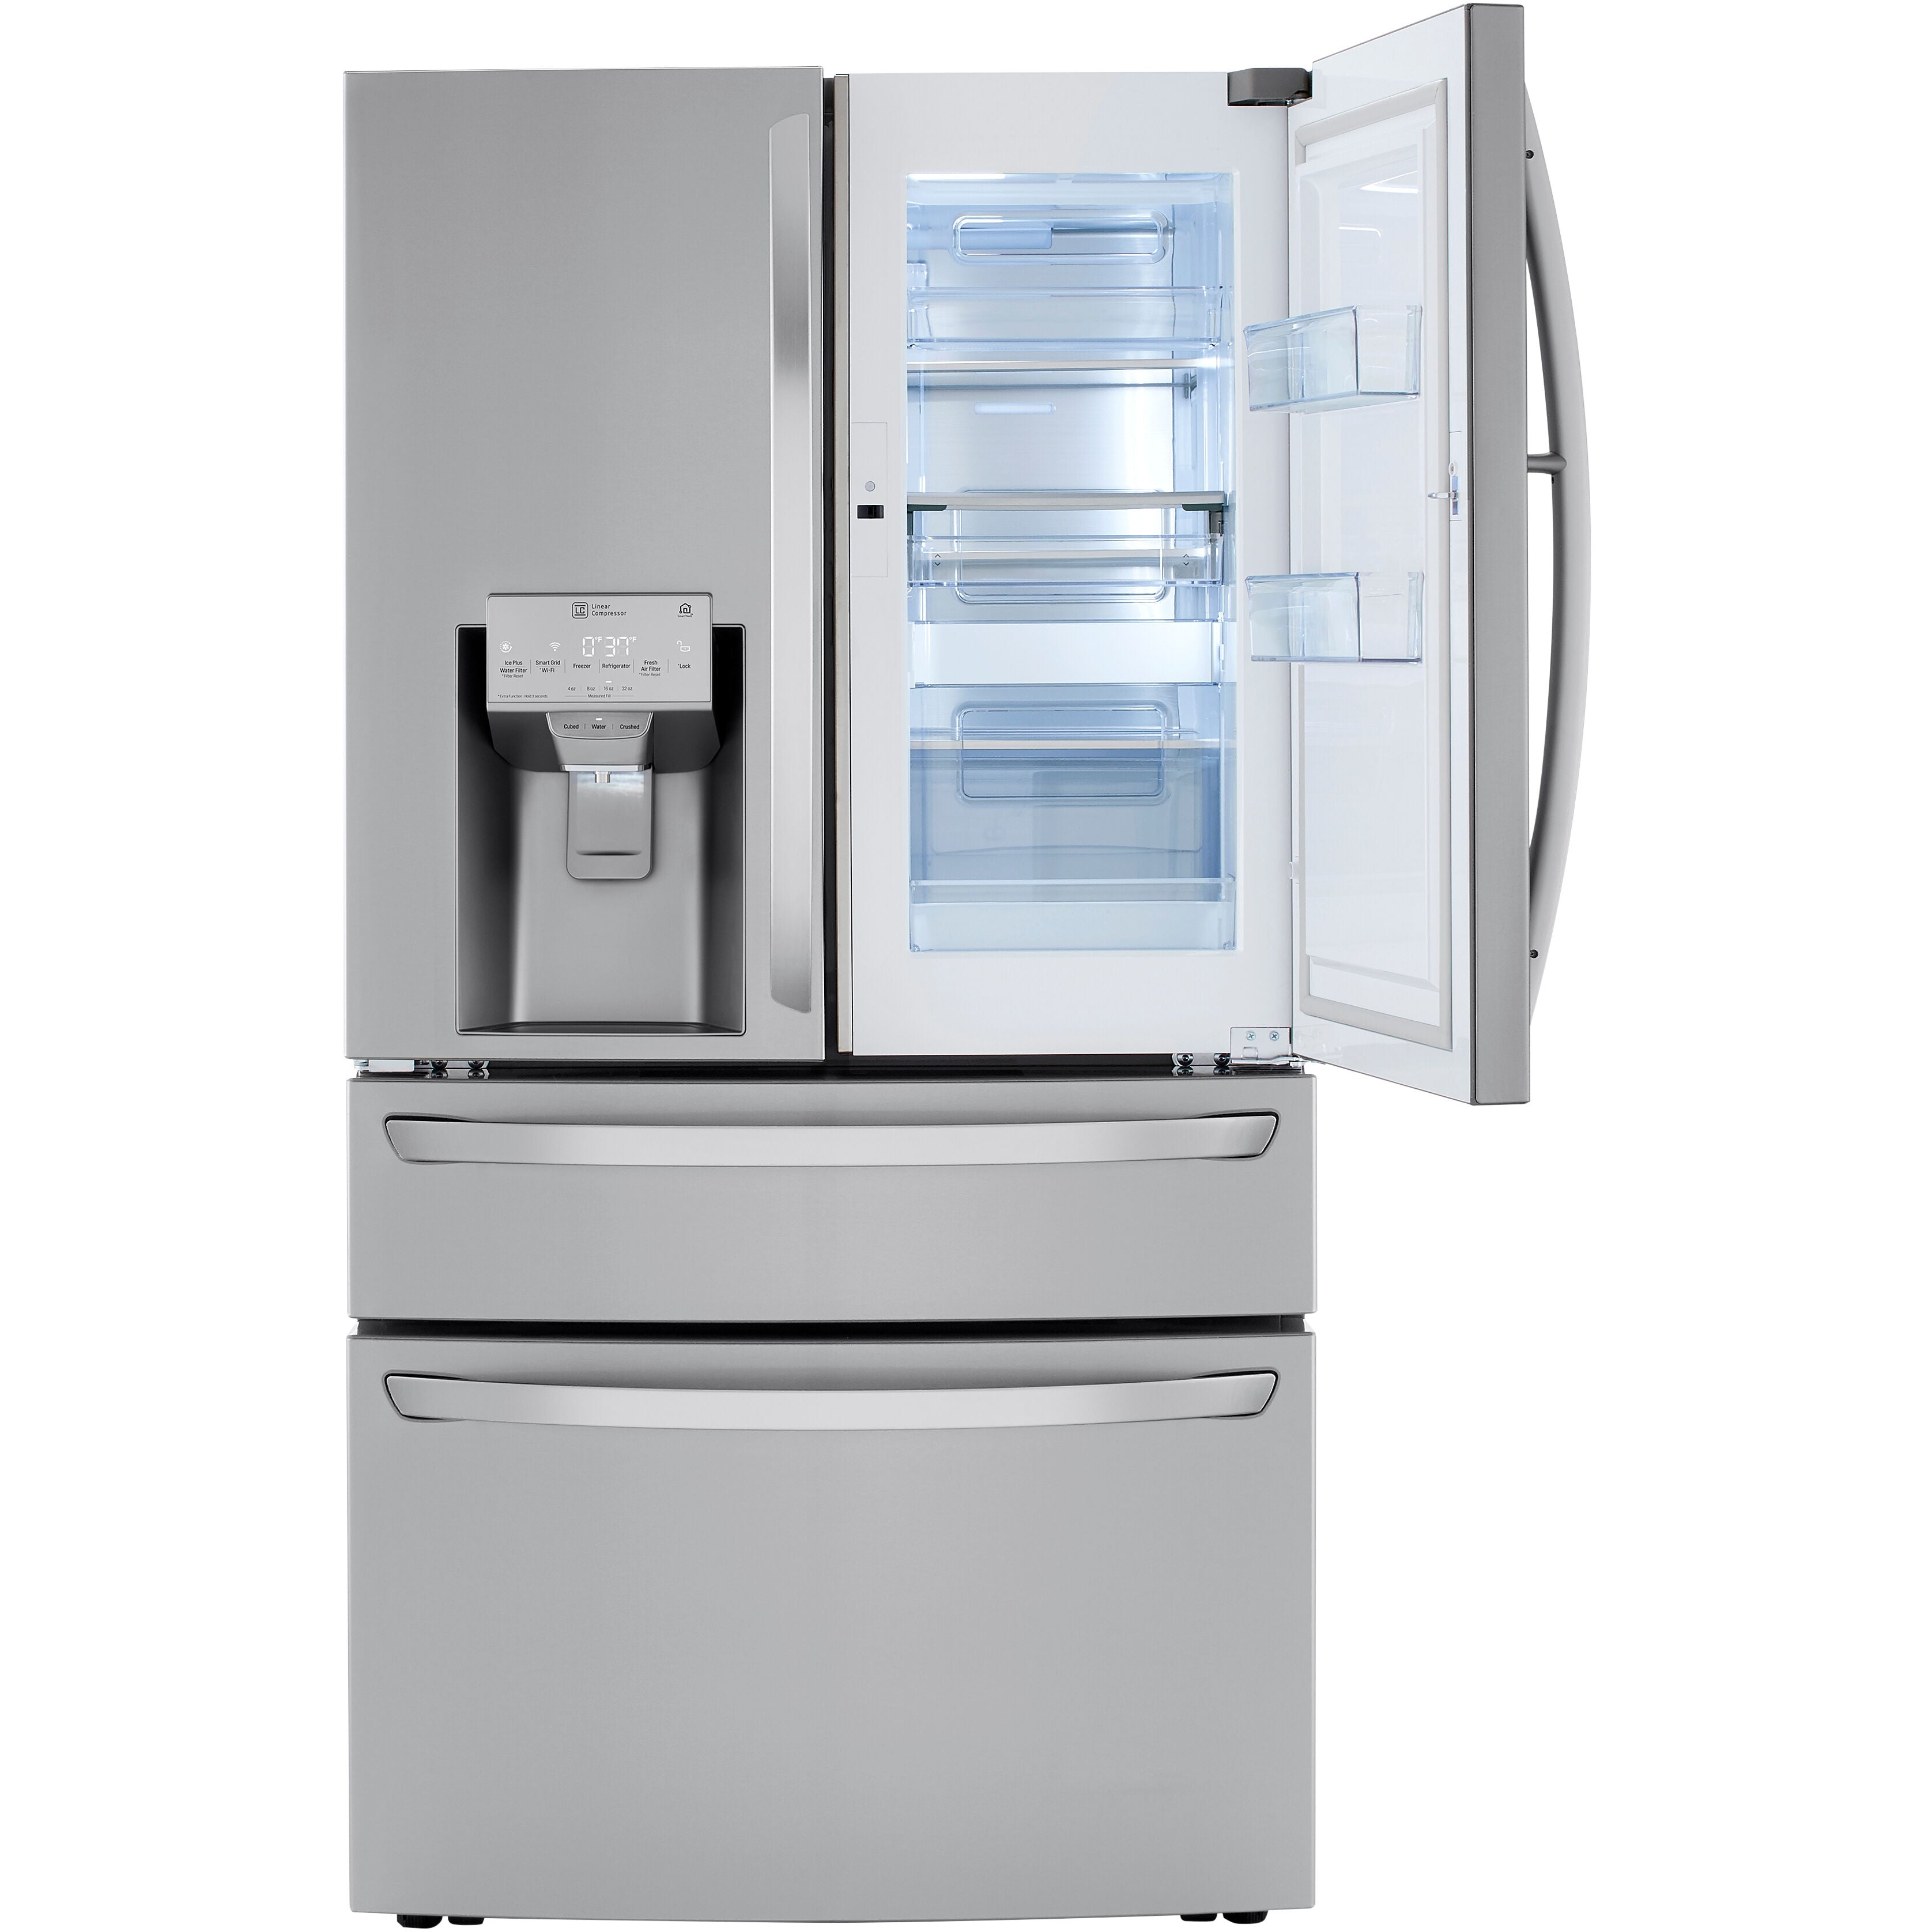 LG 36 Inch 4-Door French Door Refrigerator in Stainless Steel 23 Cu. Ft. (LRMDC2306S)